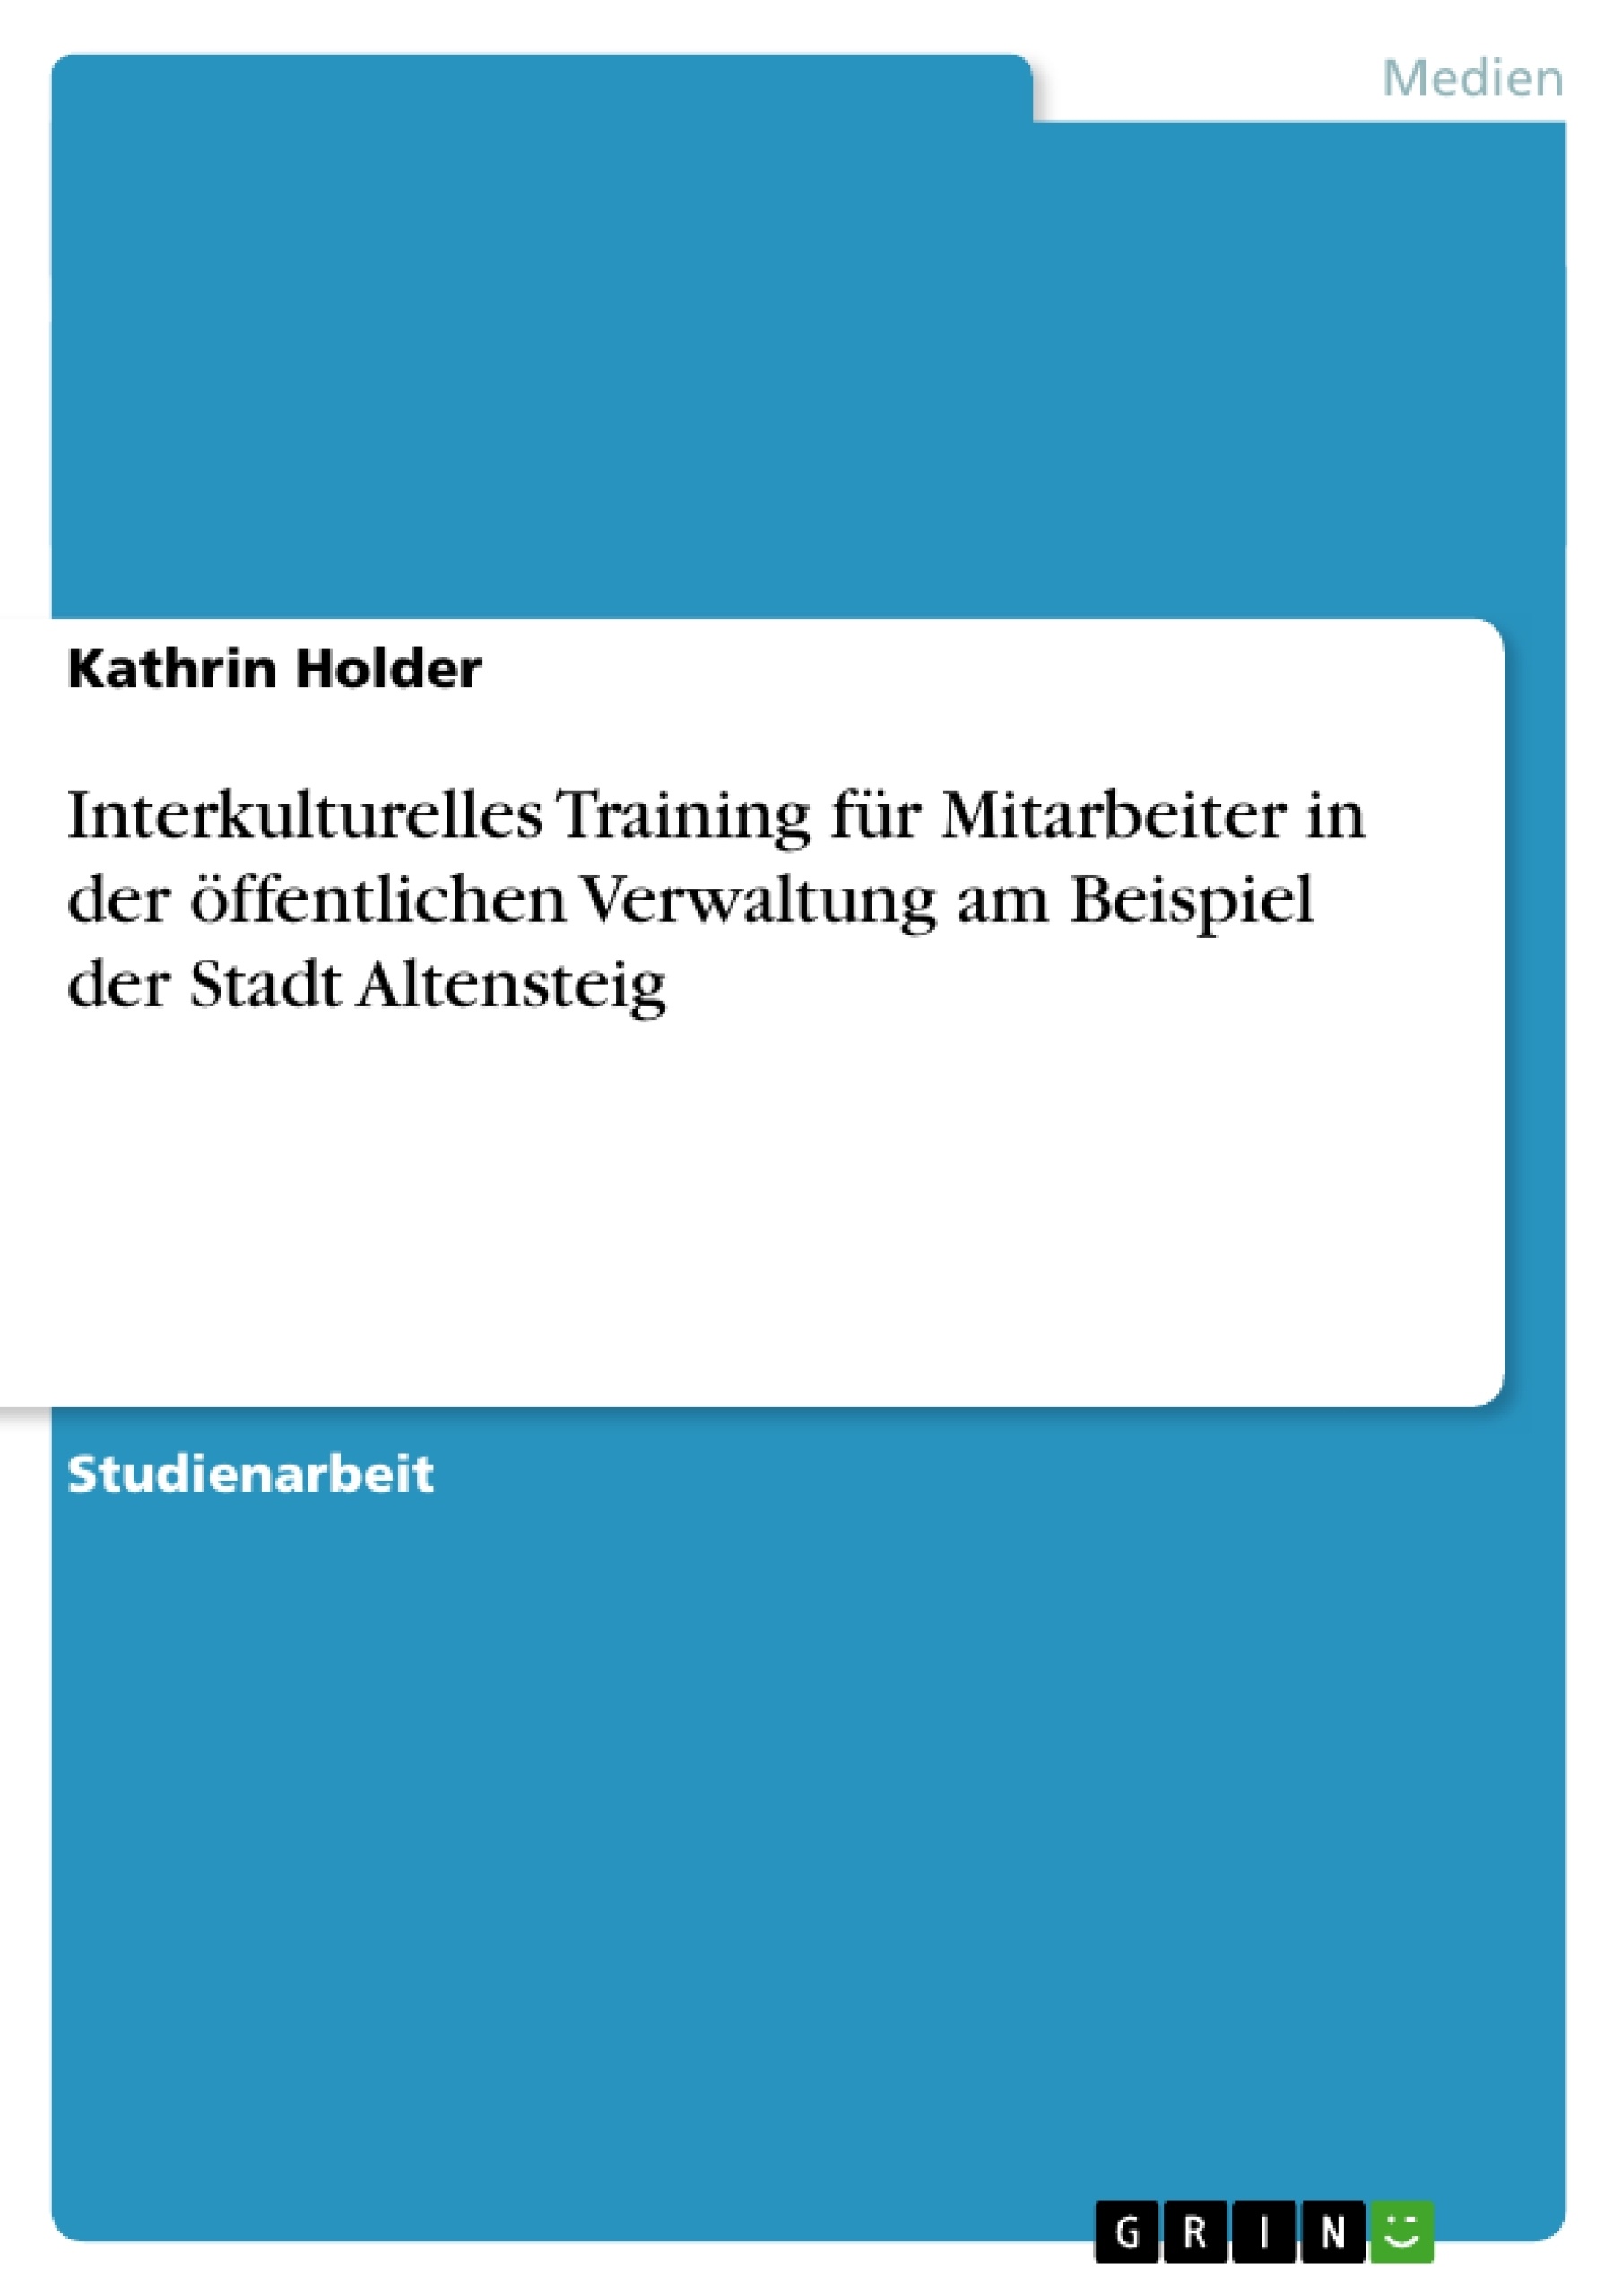 Title: Interkulturelles Training für Mitarbeiter in der öffentlichen Verwaltung am Beispiel der Stadt Altensteig